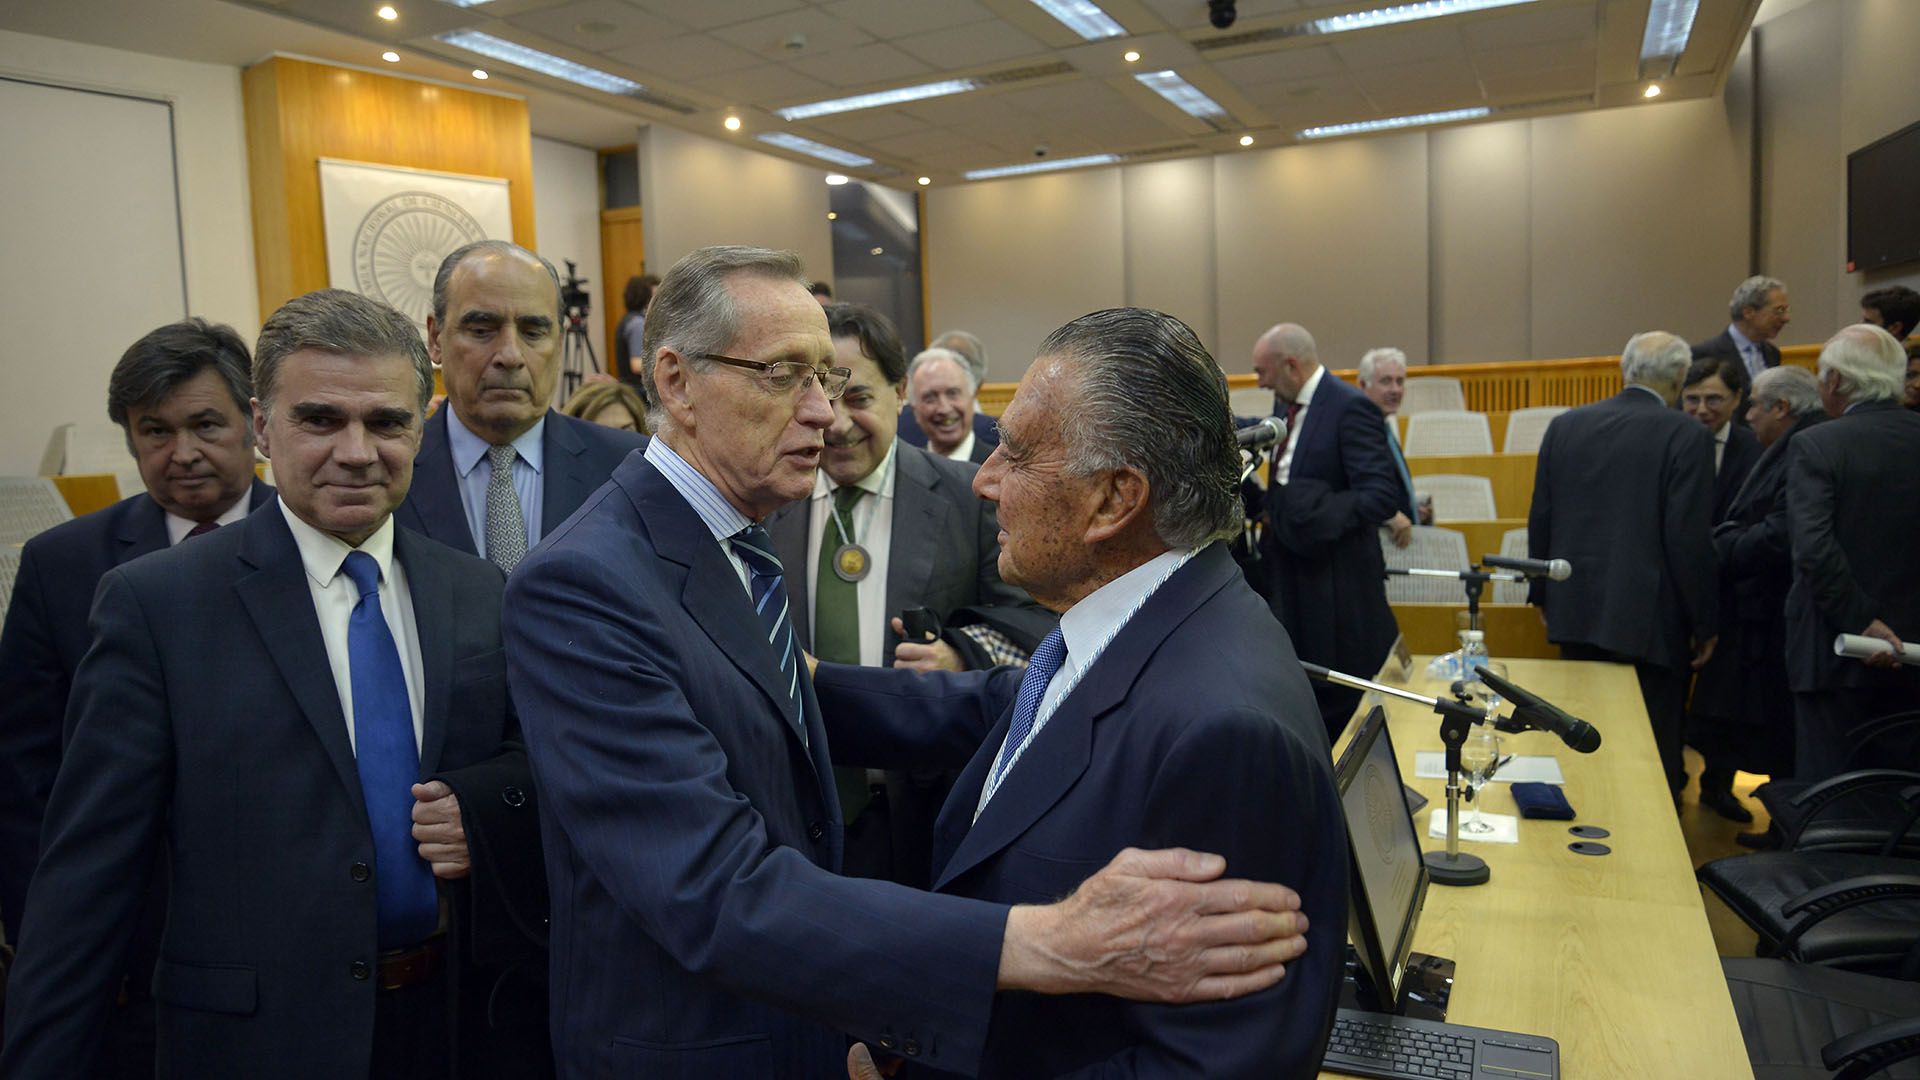 El ex canciller Adalberto Rodríguez Giavarini saluda al nuevo miembro de la Academia de Ciencias de la Empresa